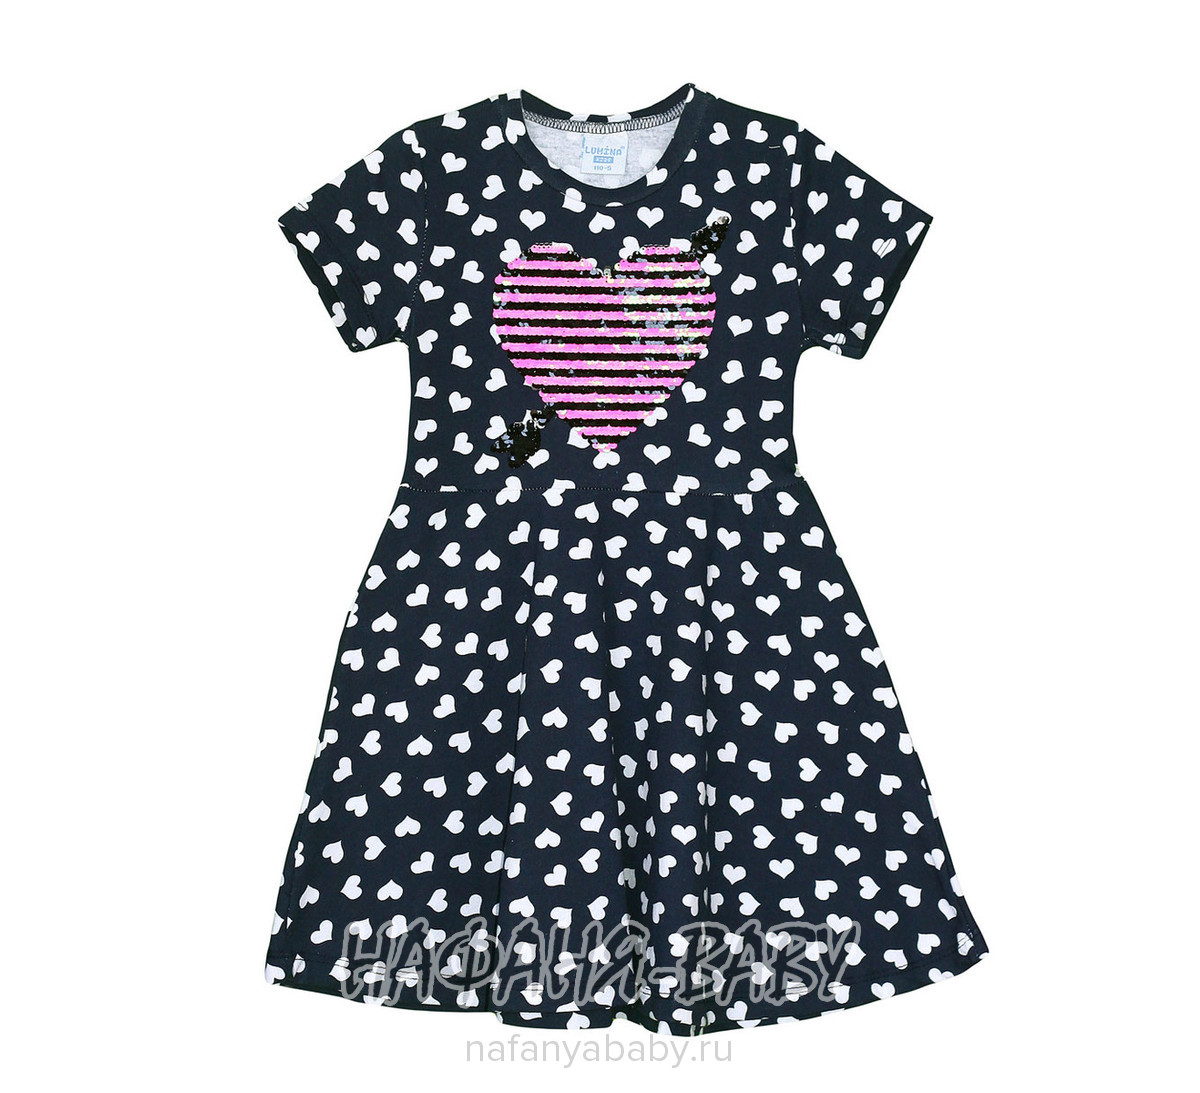 Детское платье LUMINA, купить в интернет магазине Нафаня. арт: 4498.